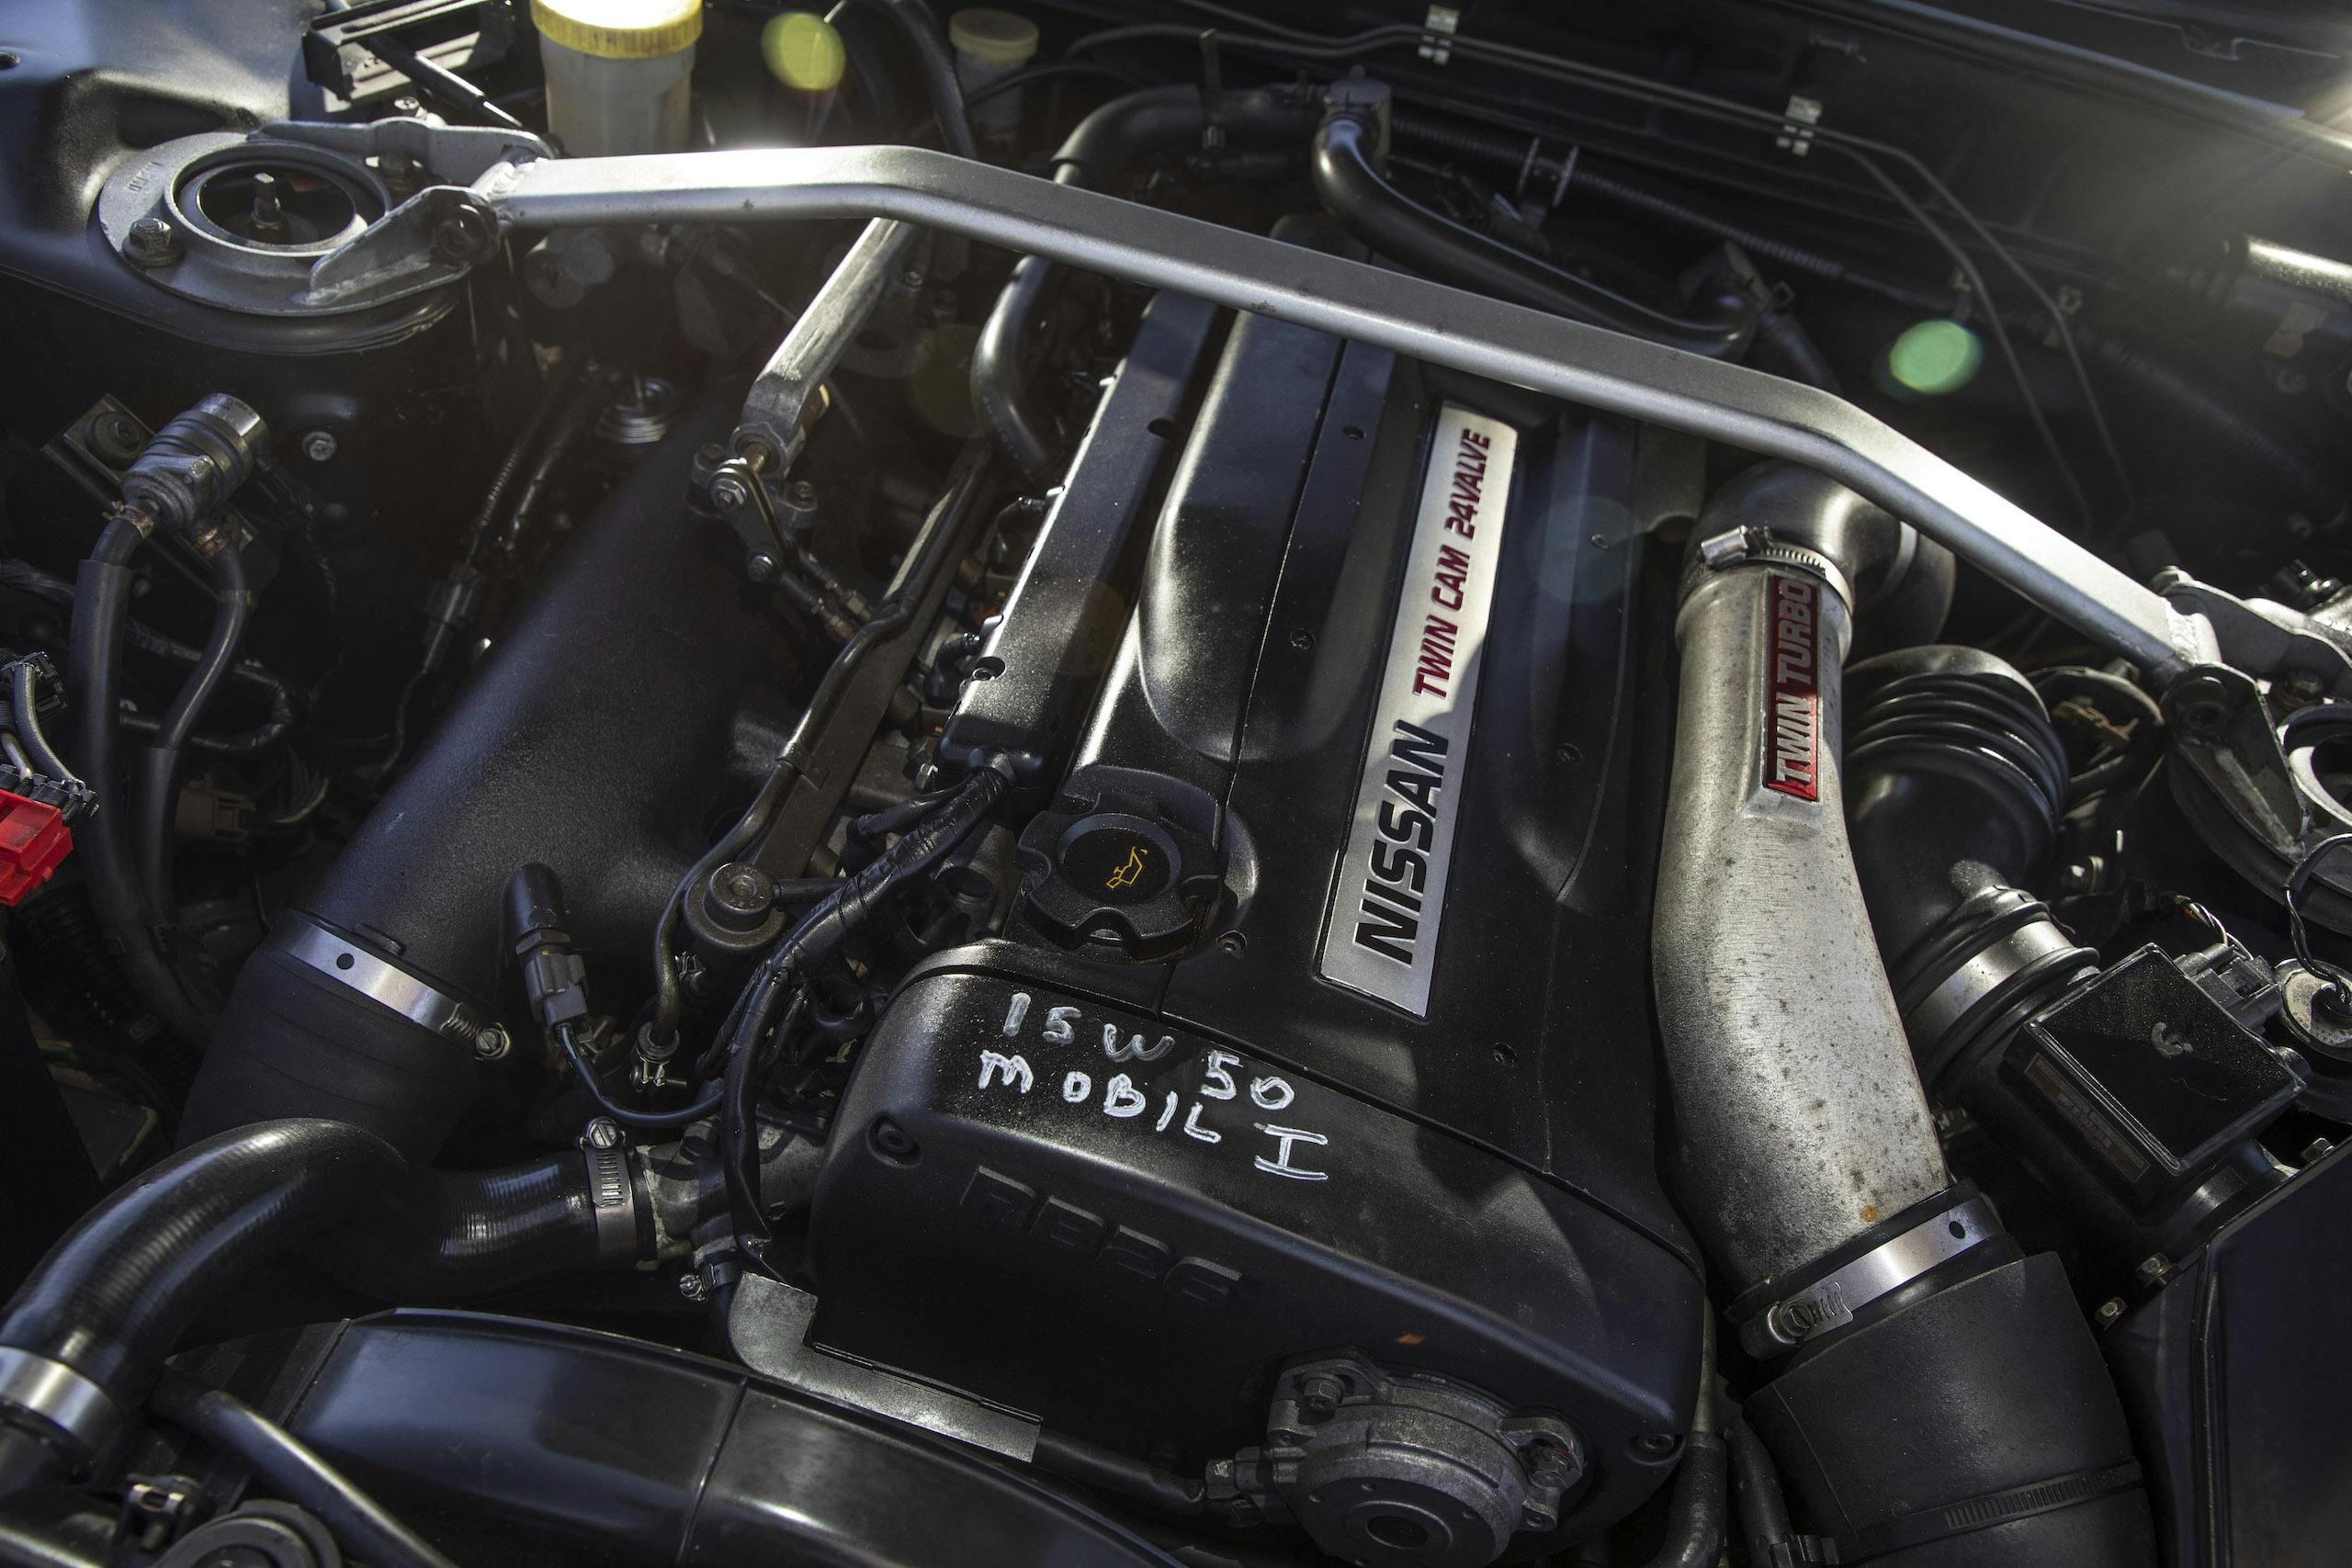 Nissan Skyline R32 GT-R engine detail